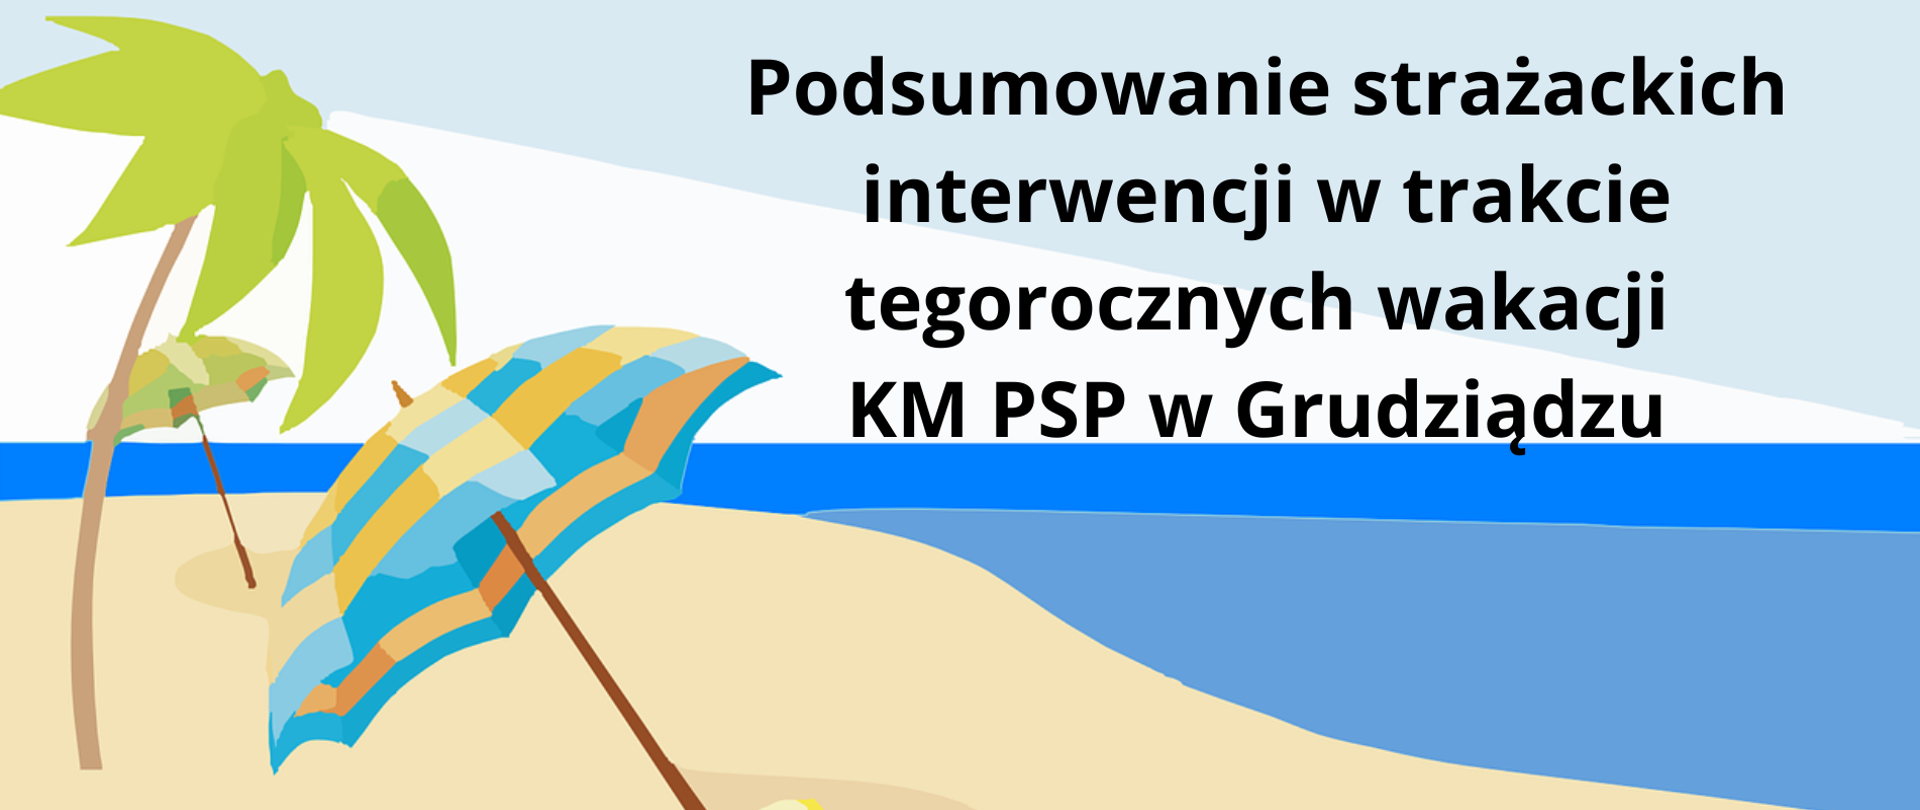 Grafika przedstawiając niebieskie morze i złotą plaże z palmą i parasolkami. na tle nieba napis "Podsumowanie strażackich interwencji w trakcie tegorocznych wakacji KM PSP w Grudziądzu"